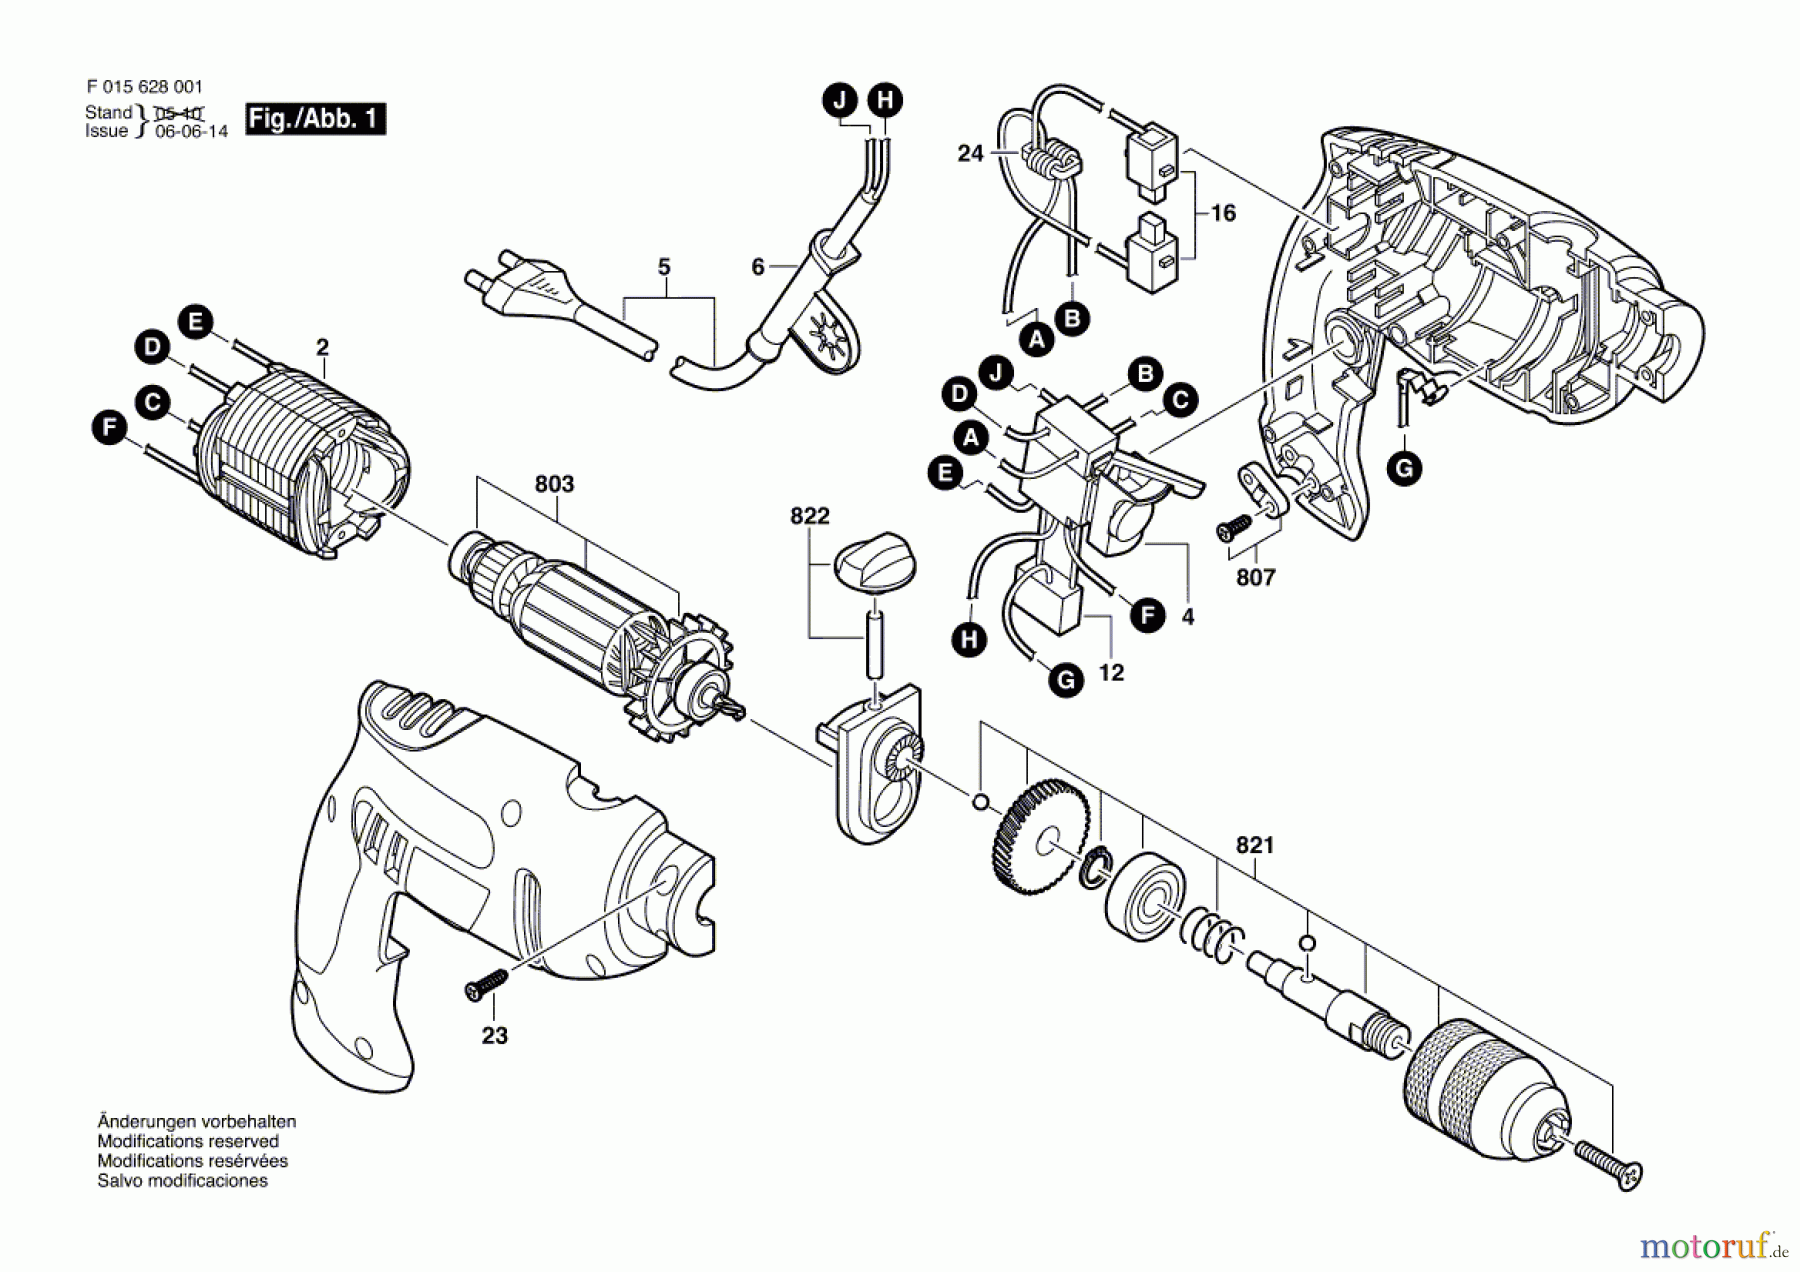  Bosch Werkzeug Schlagbohrmaschine 6280 Seite 1